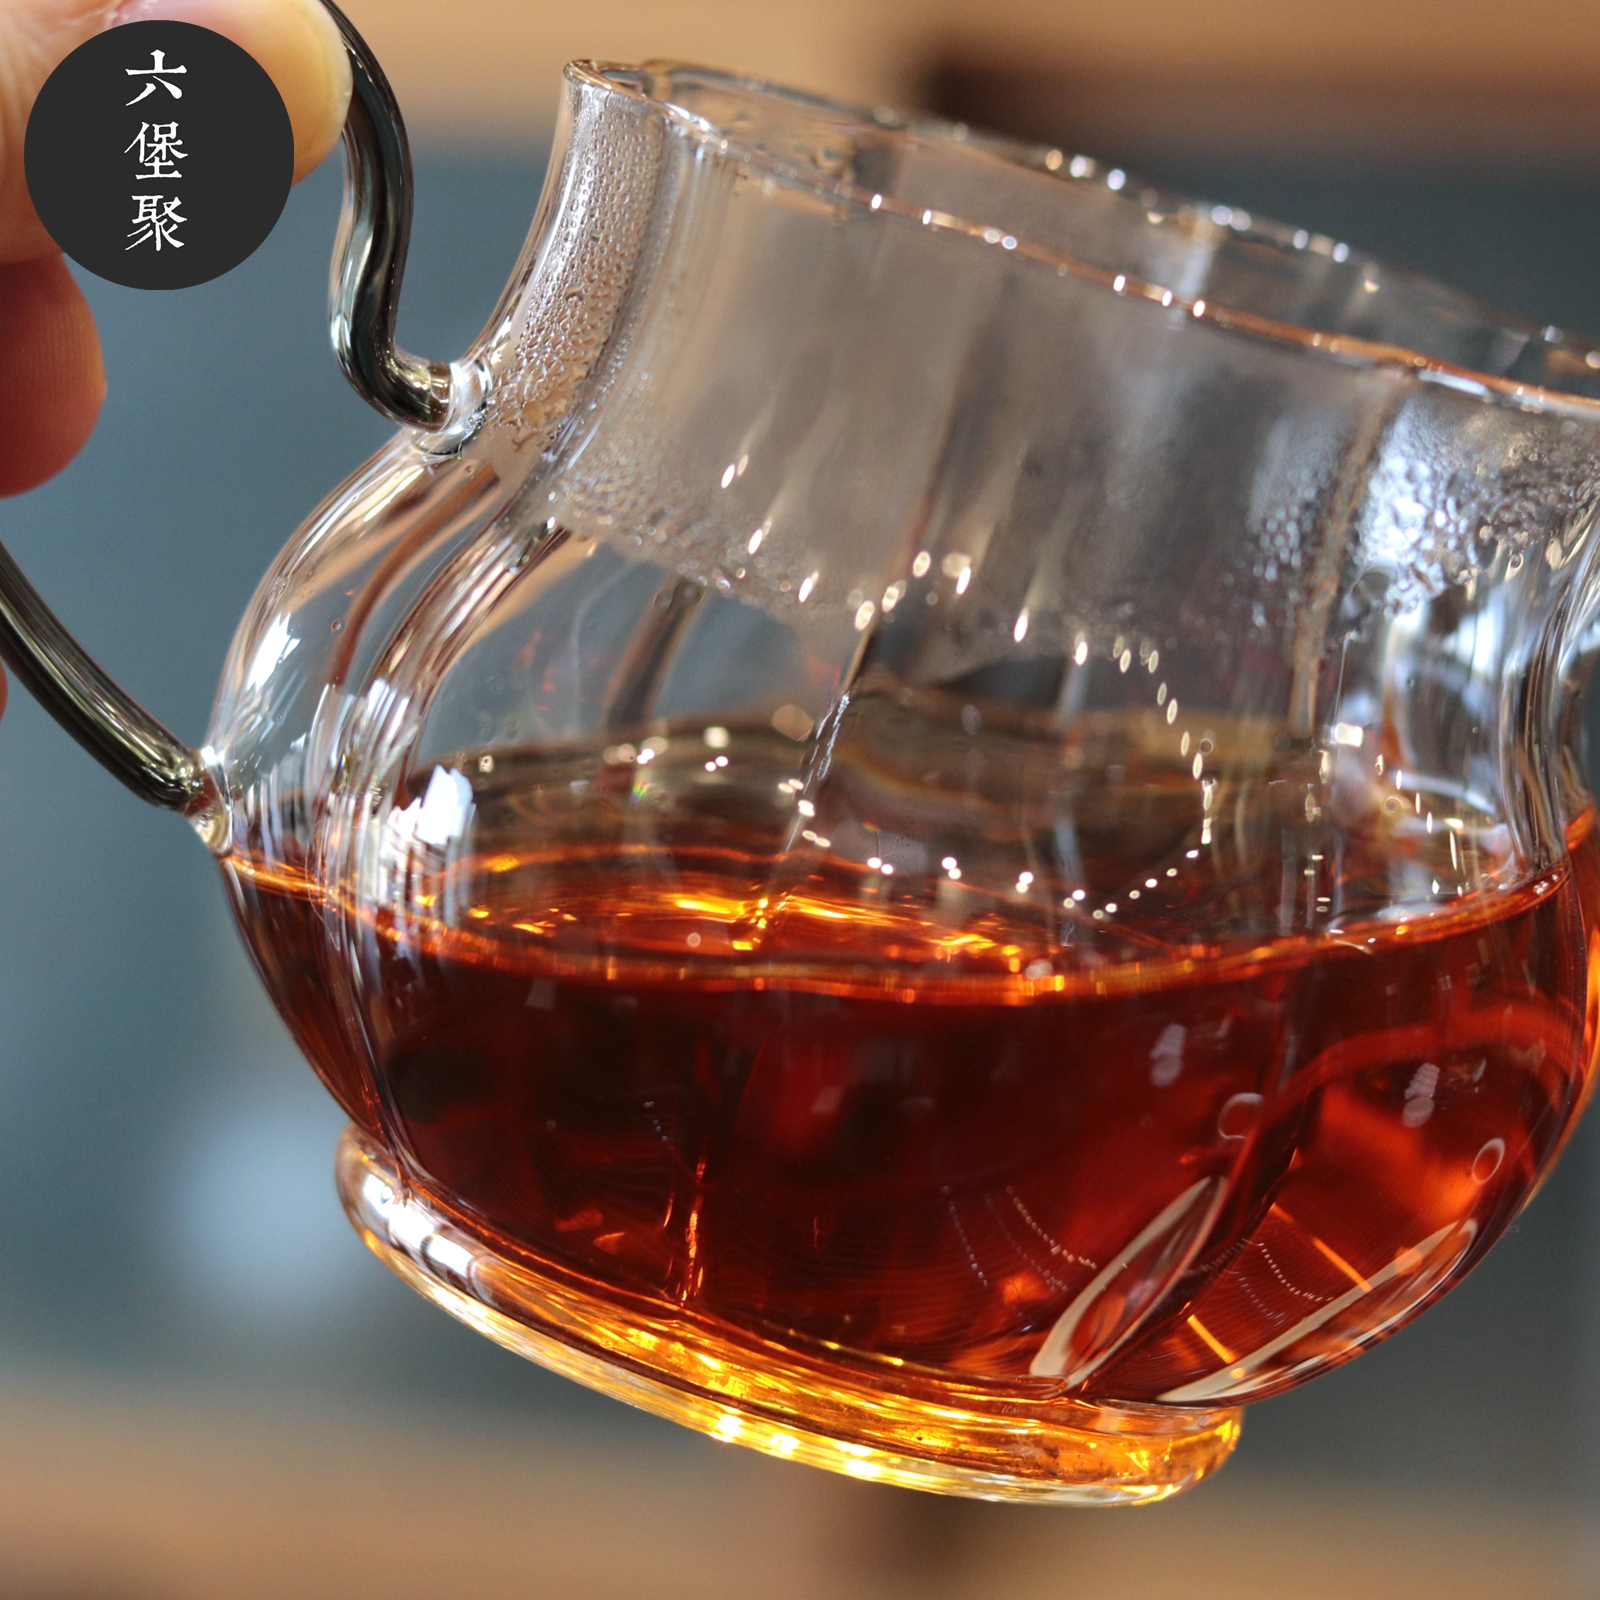 2005年 璞兰涧原种六堡茶 农家茶 古法工艺 六堡聚私房茶（50g/罐）